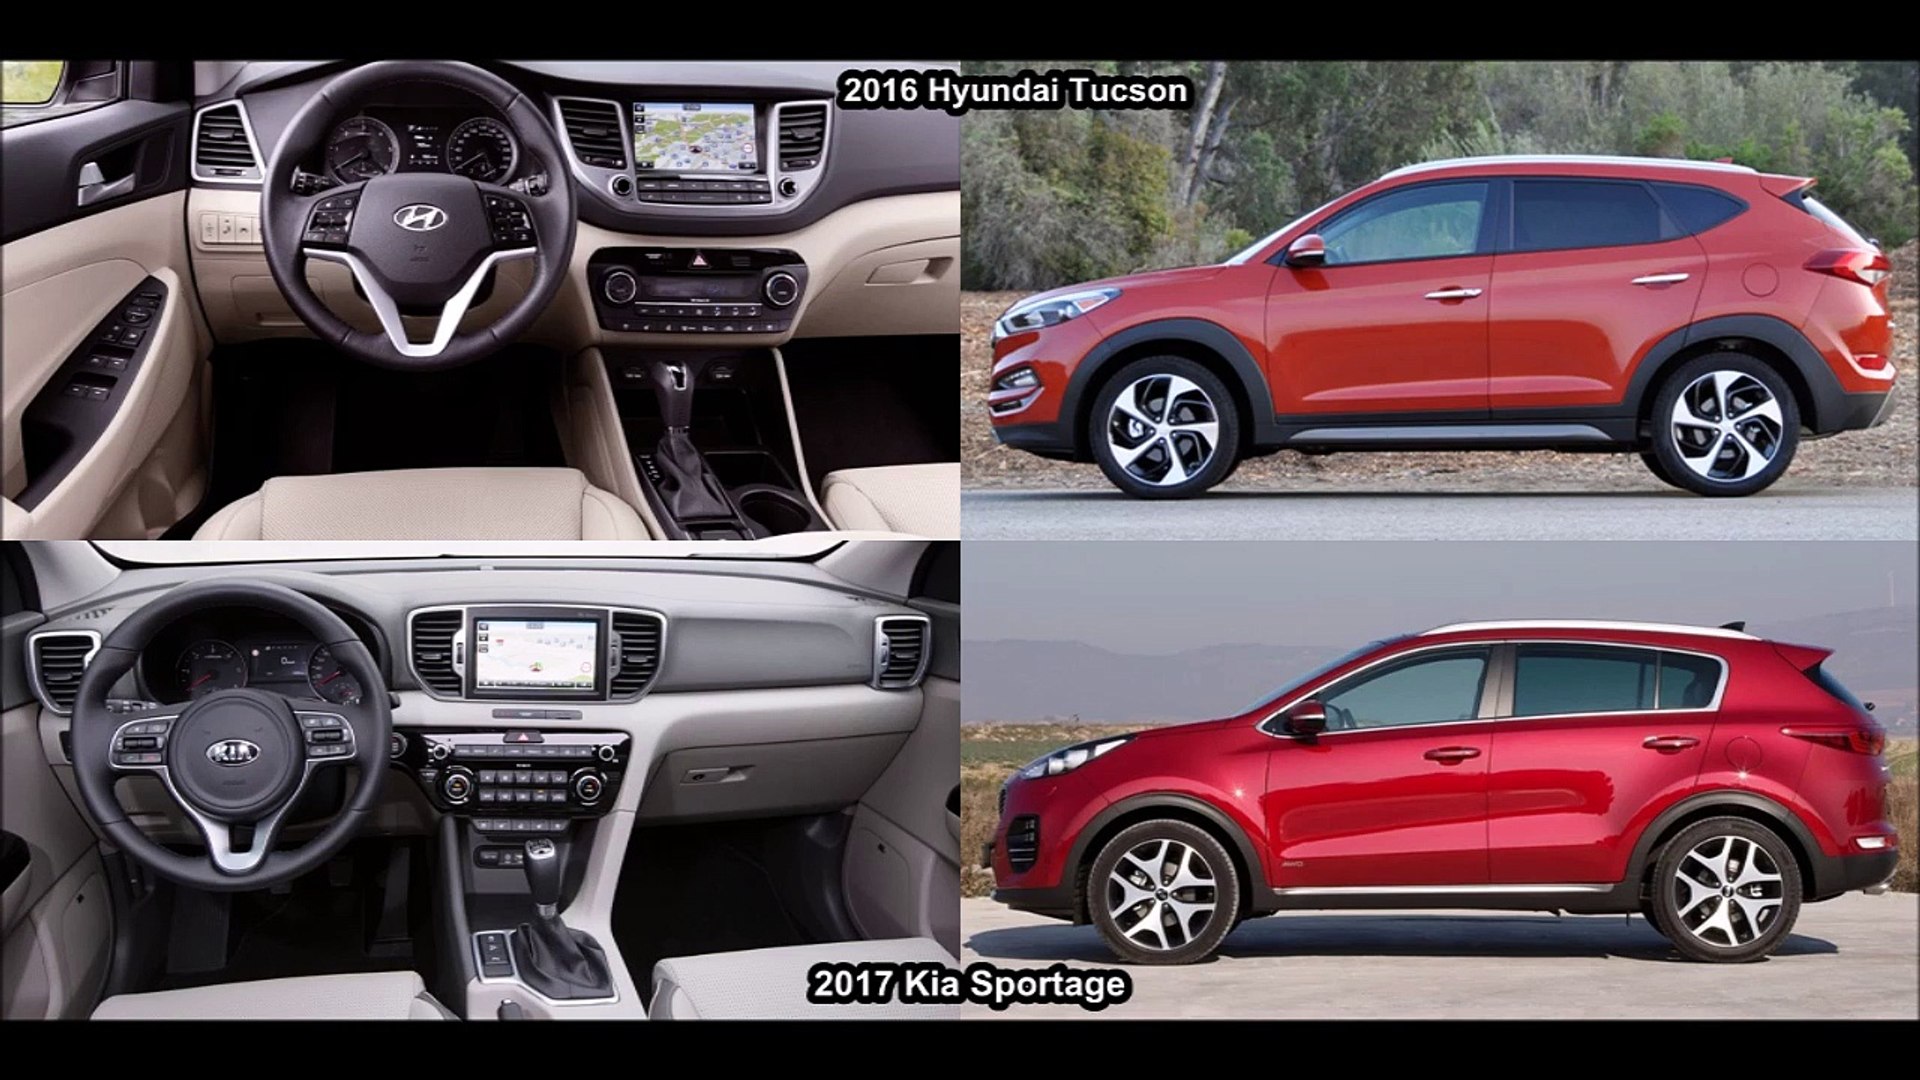 2017 Kia Sportage Vs 2016 Hyundai Tucson DESIGN! - Dailymotion Video